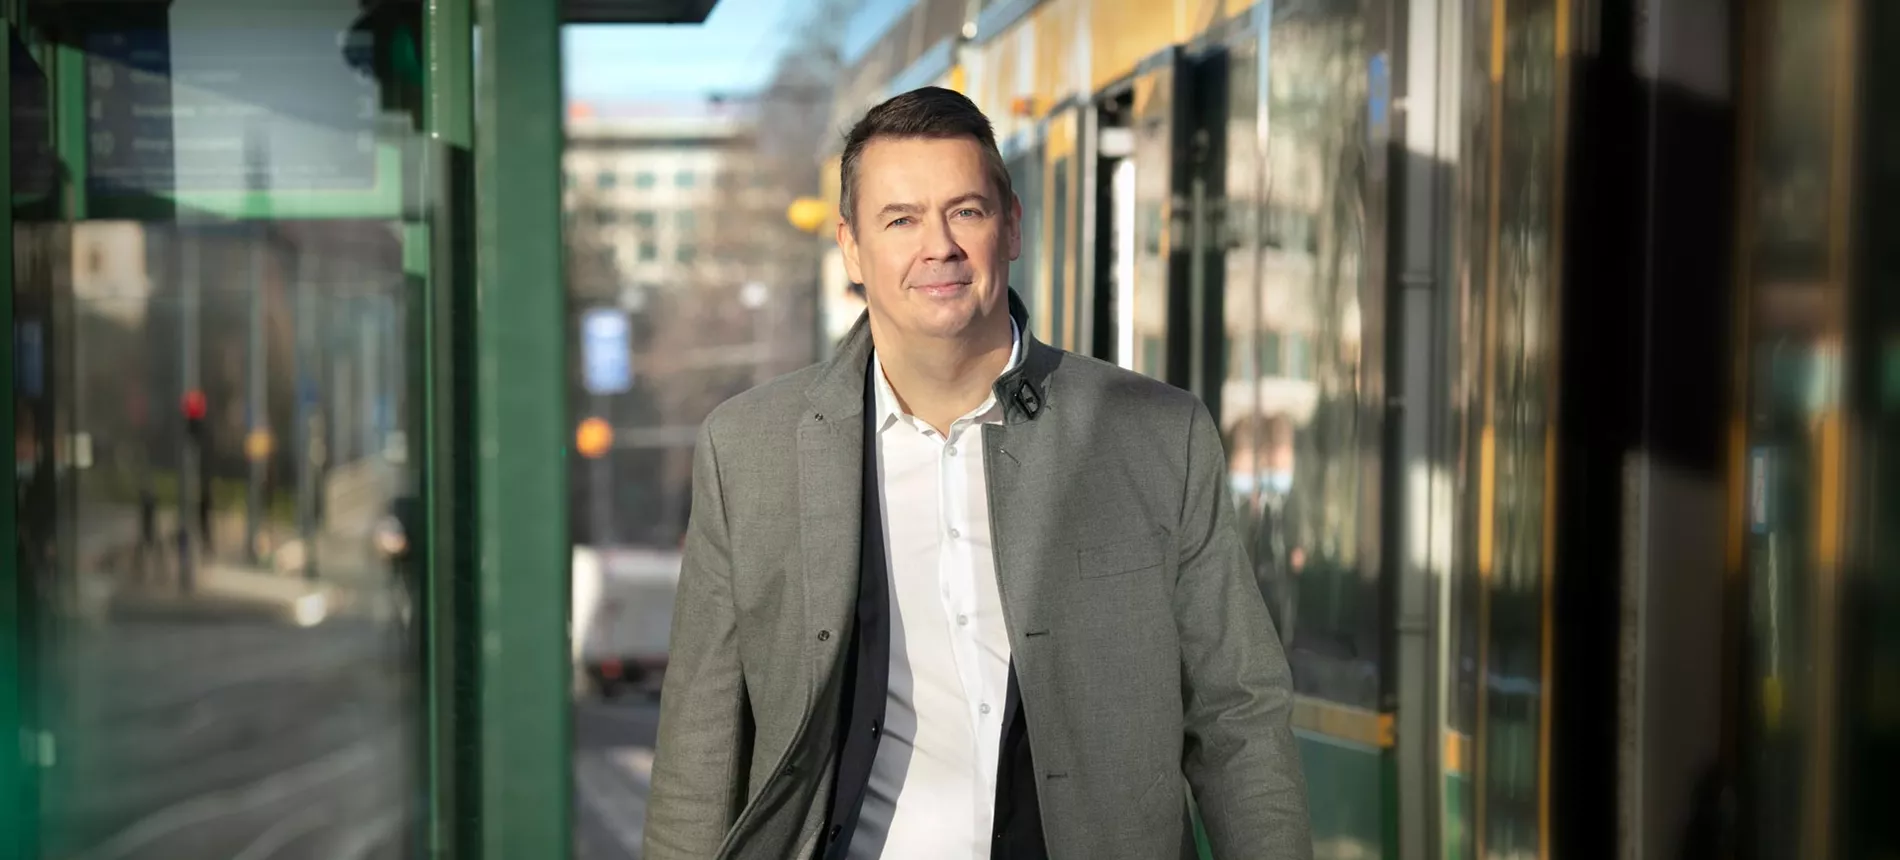 Pohjolan Voiman tietohallintojohtaja Petri Nampajärvi kävelee kameraa kohden